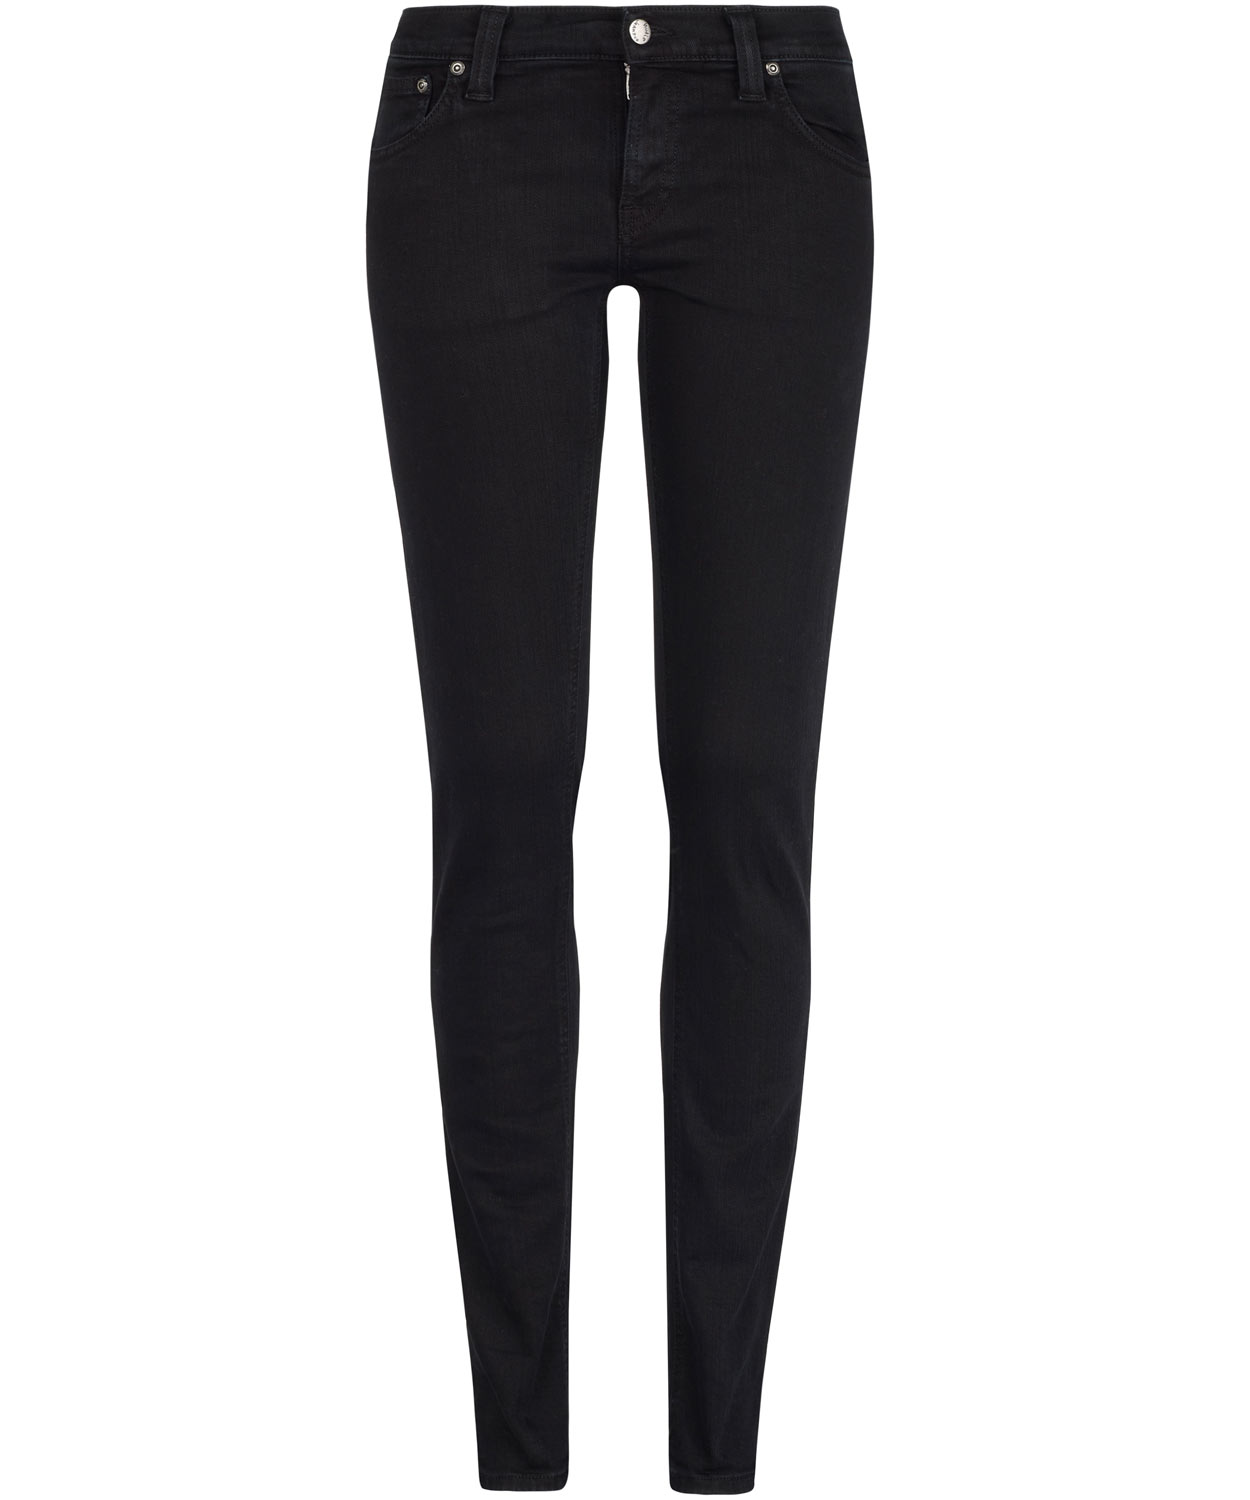 Lyst - Nudie jeans Tight Long John Black Jeans in Black